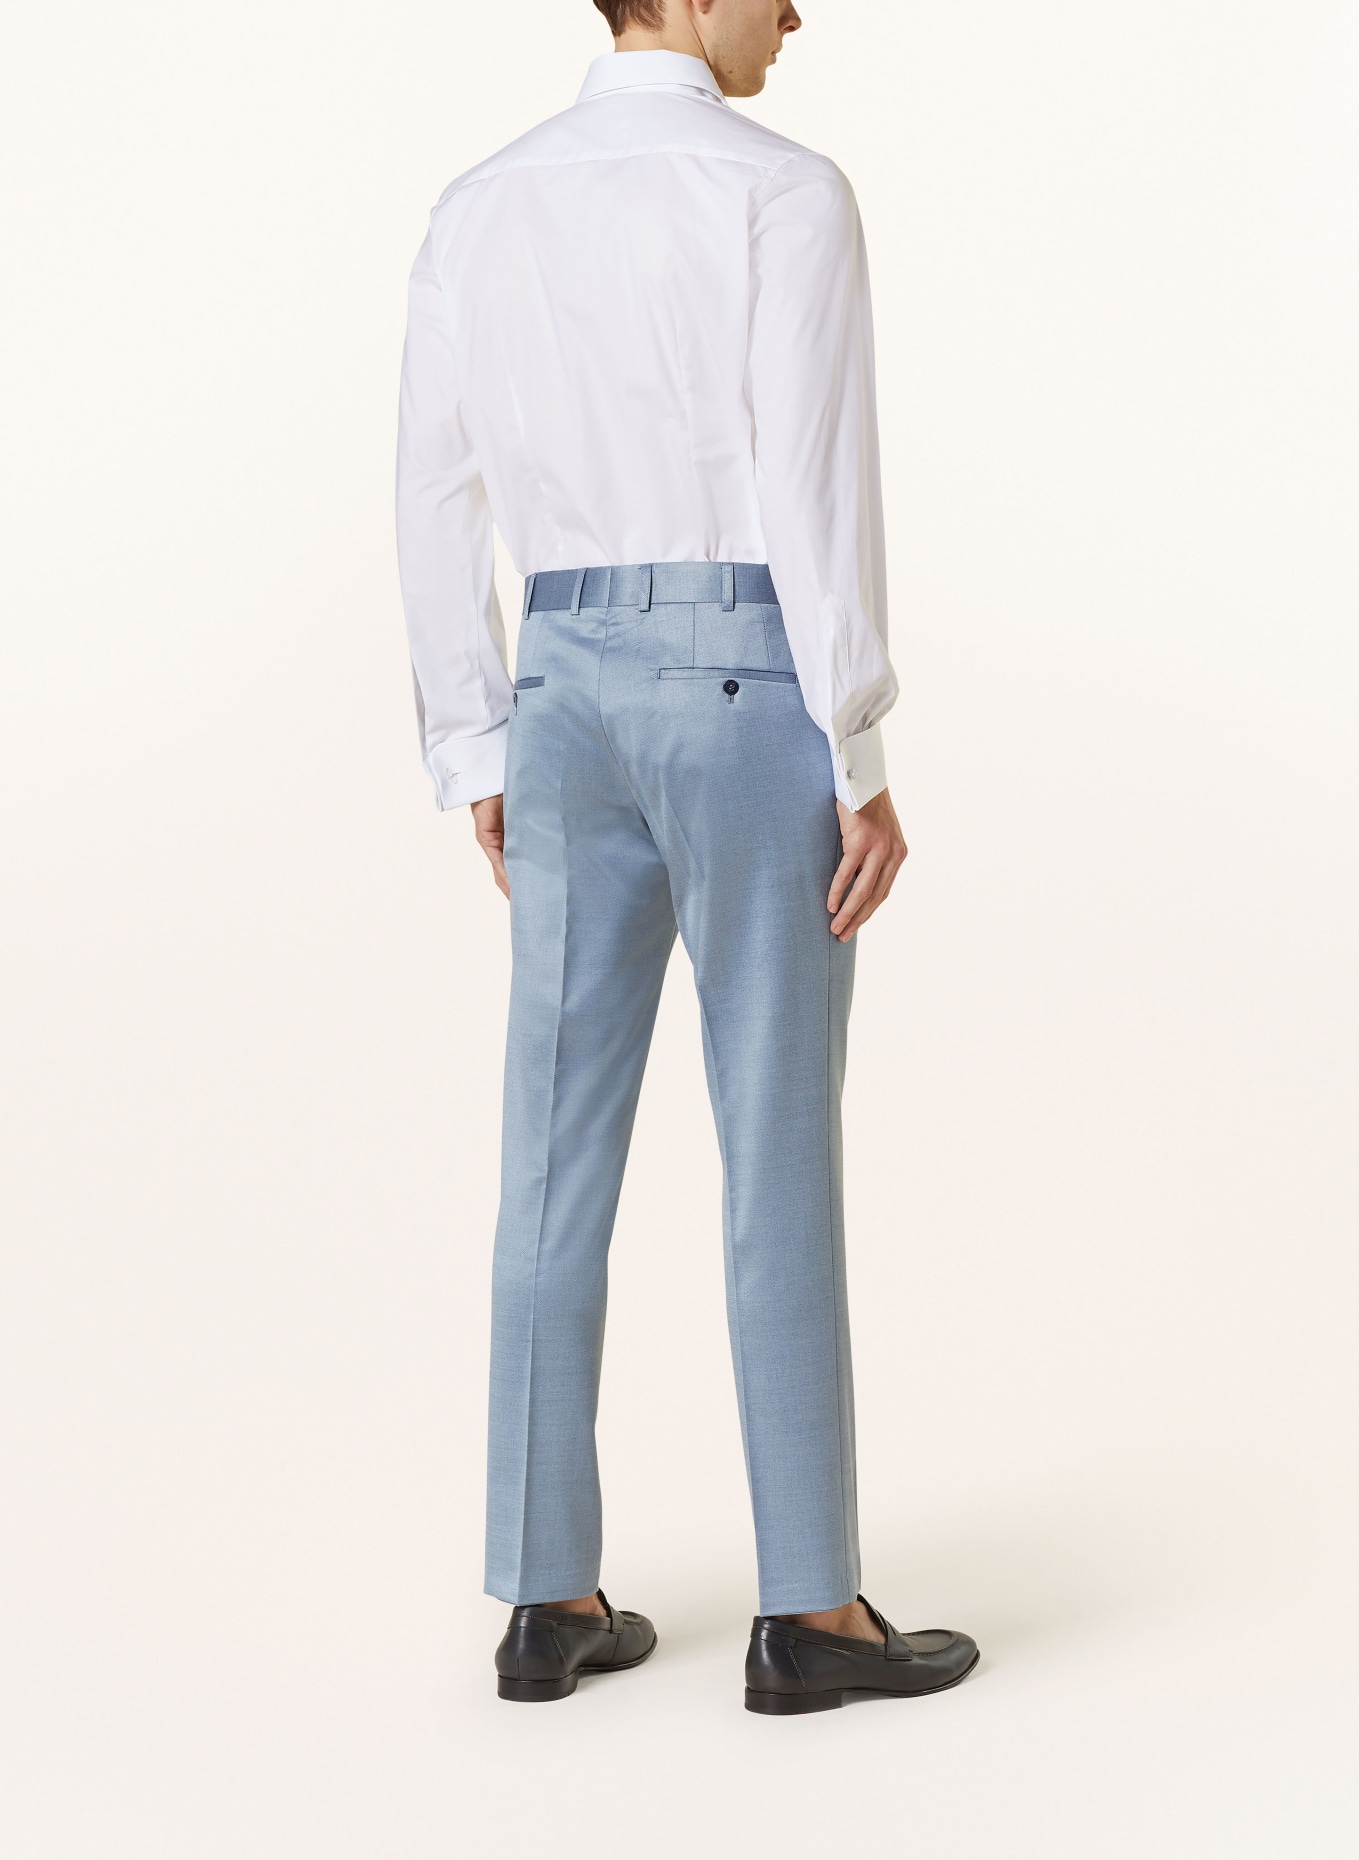 WILVORST Suit trousers slim fit, Color: 036 hell Blau (Image 4)